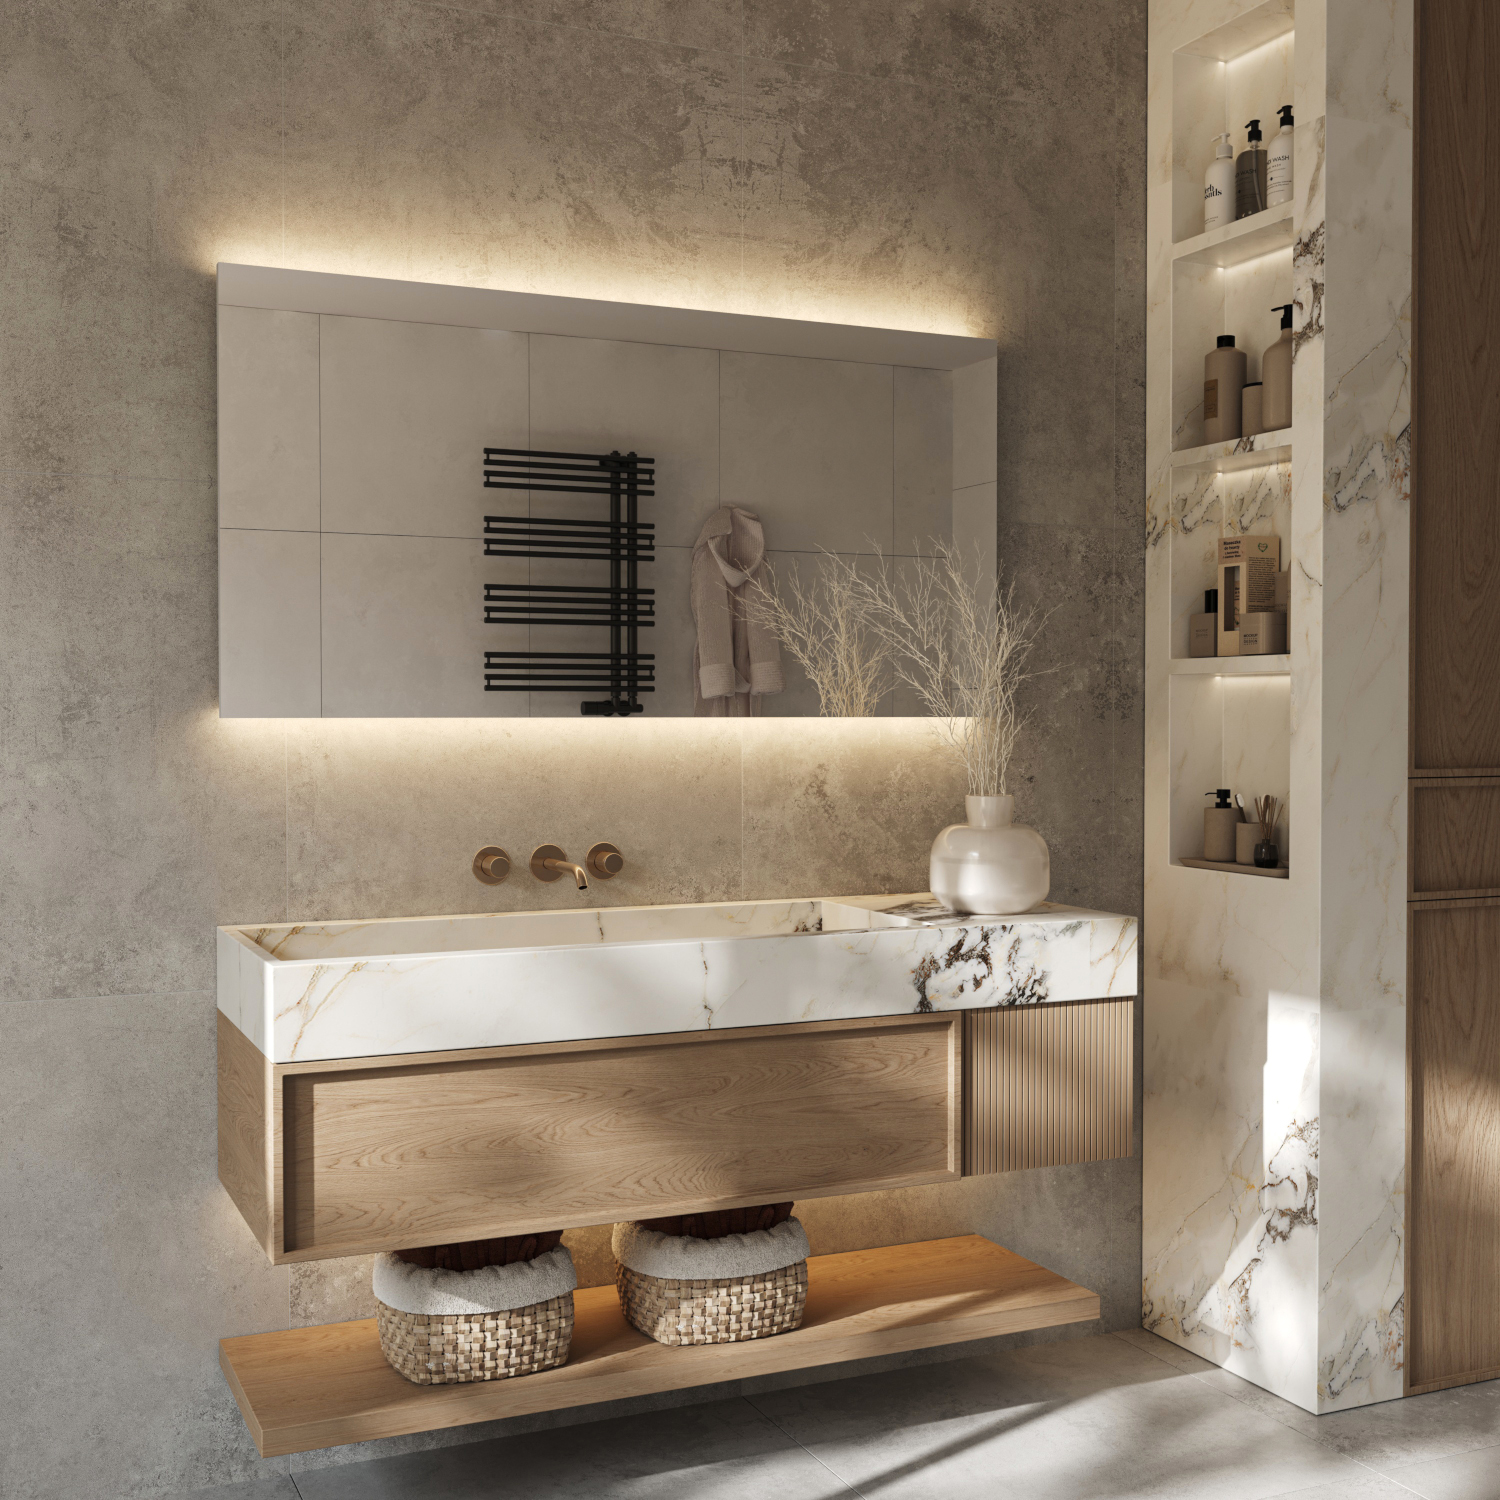 Bij deze stijlvolle badkamer spiegel schijnt de verlichting vanachter de spiegel fraai en sfeervol over de wand